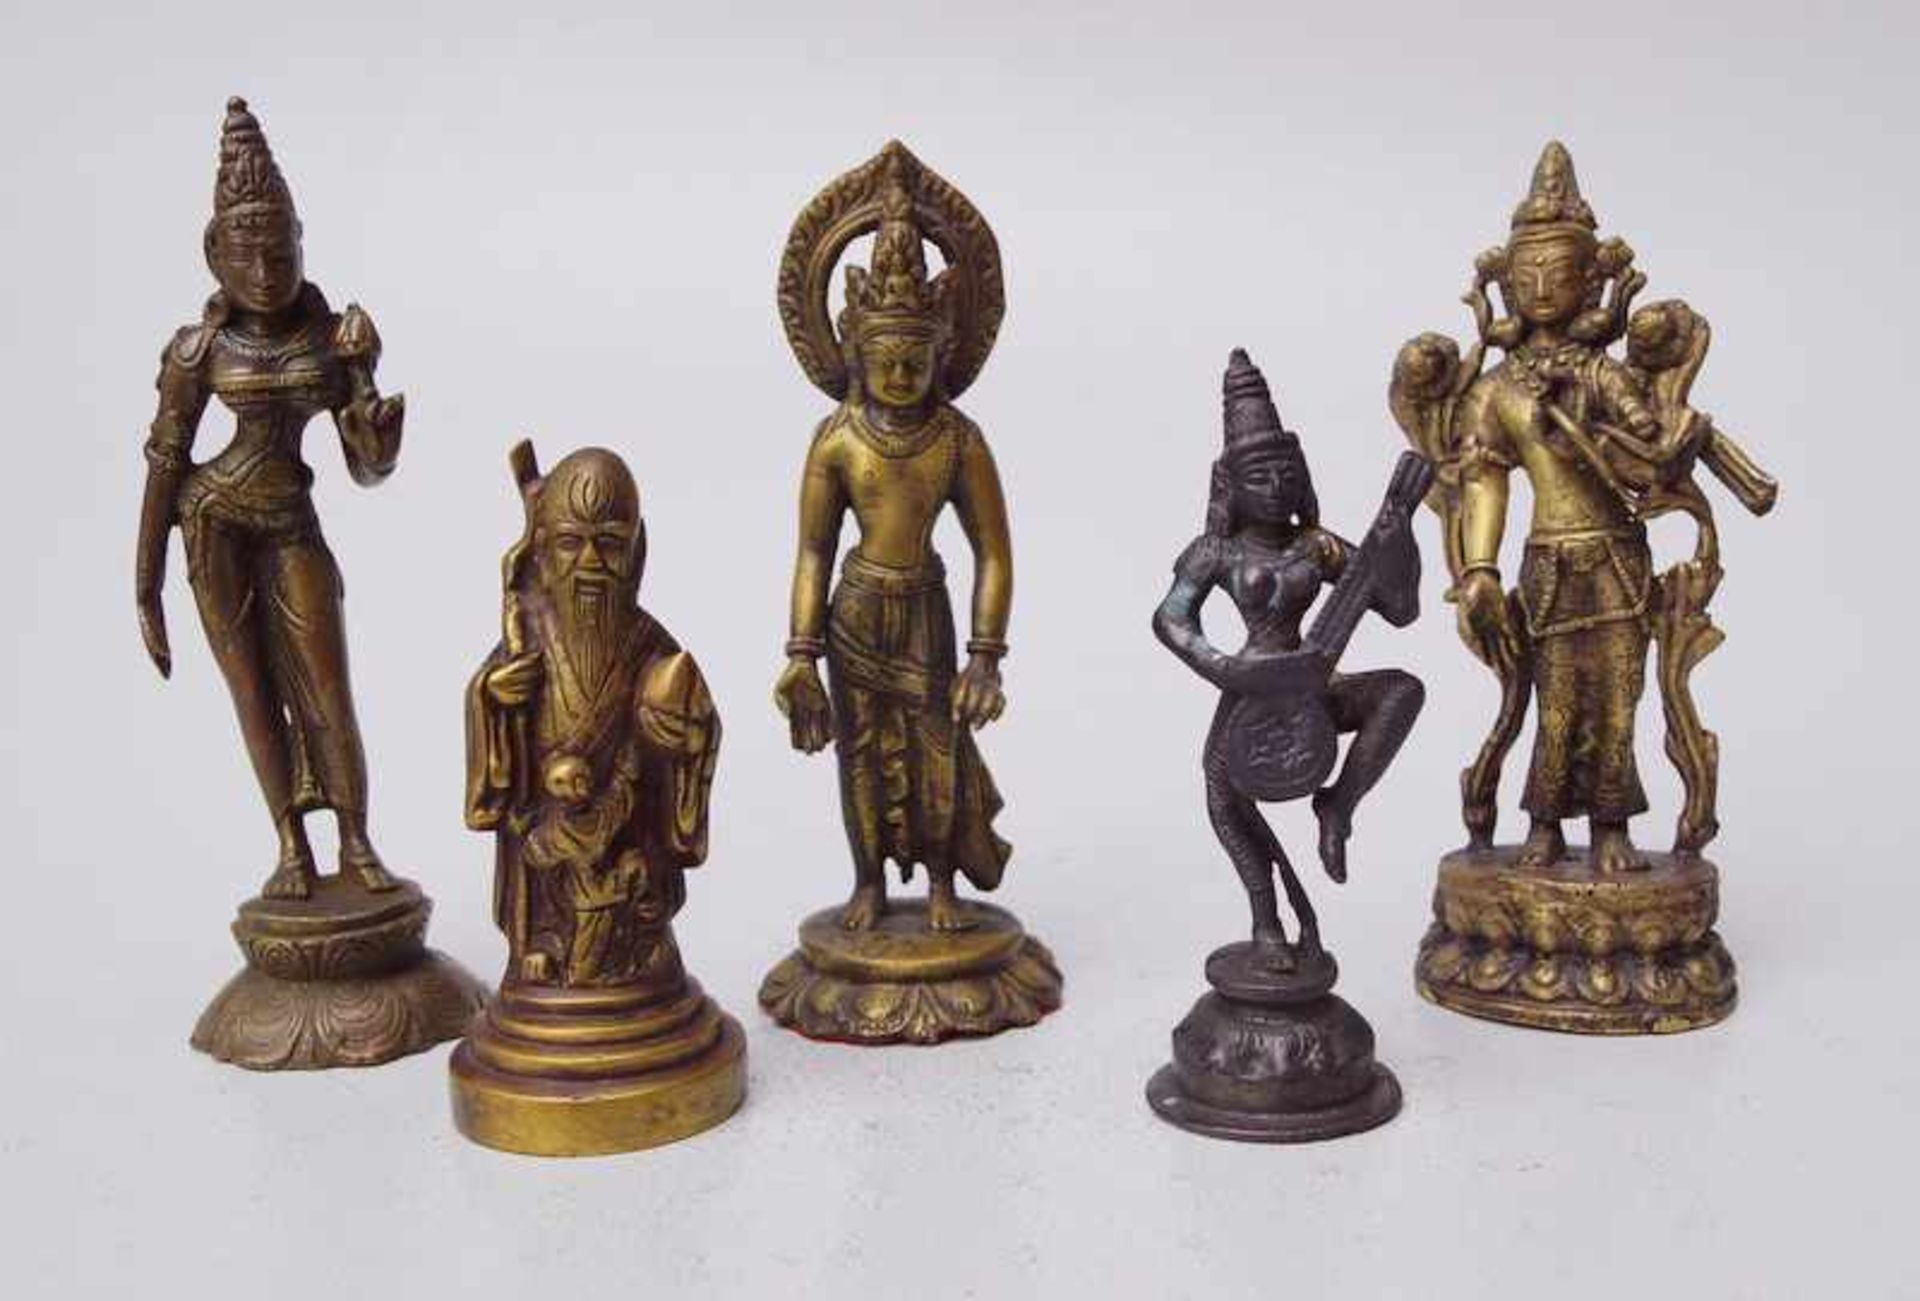 5 Sinotibetische Buddhadarstellungen aus Bronze 2 x Tara sinotibetisch 2 x Indien 1x darstellung von